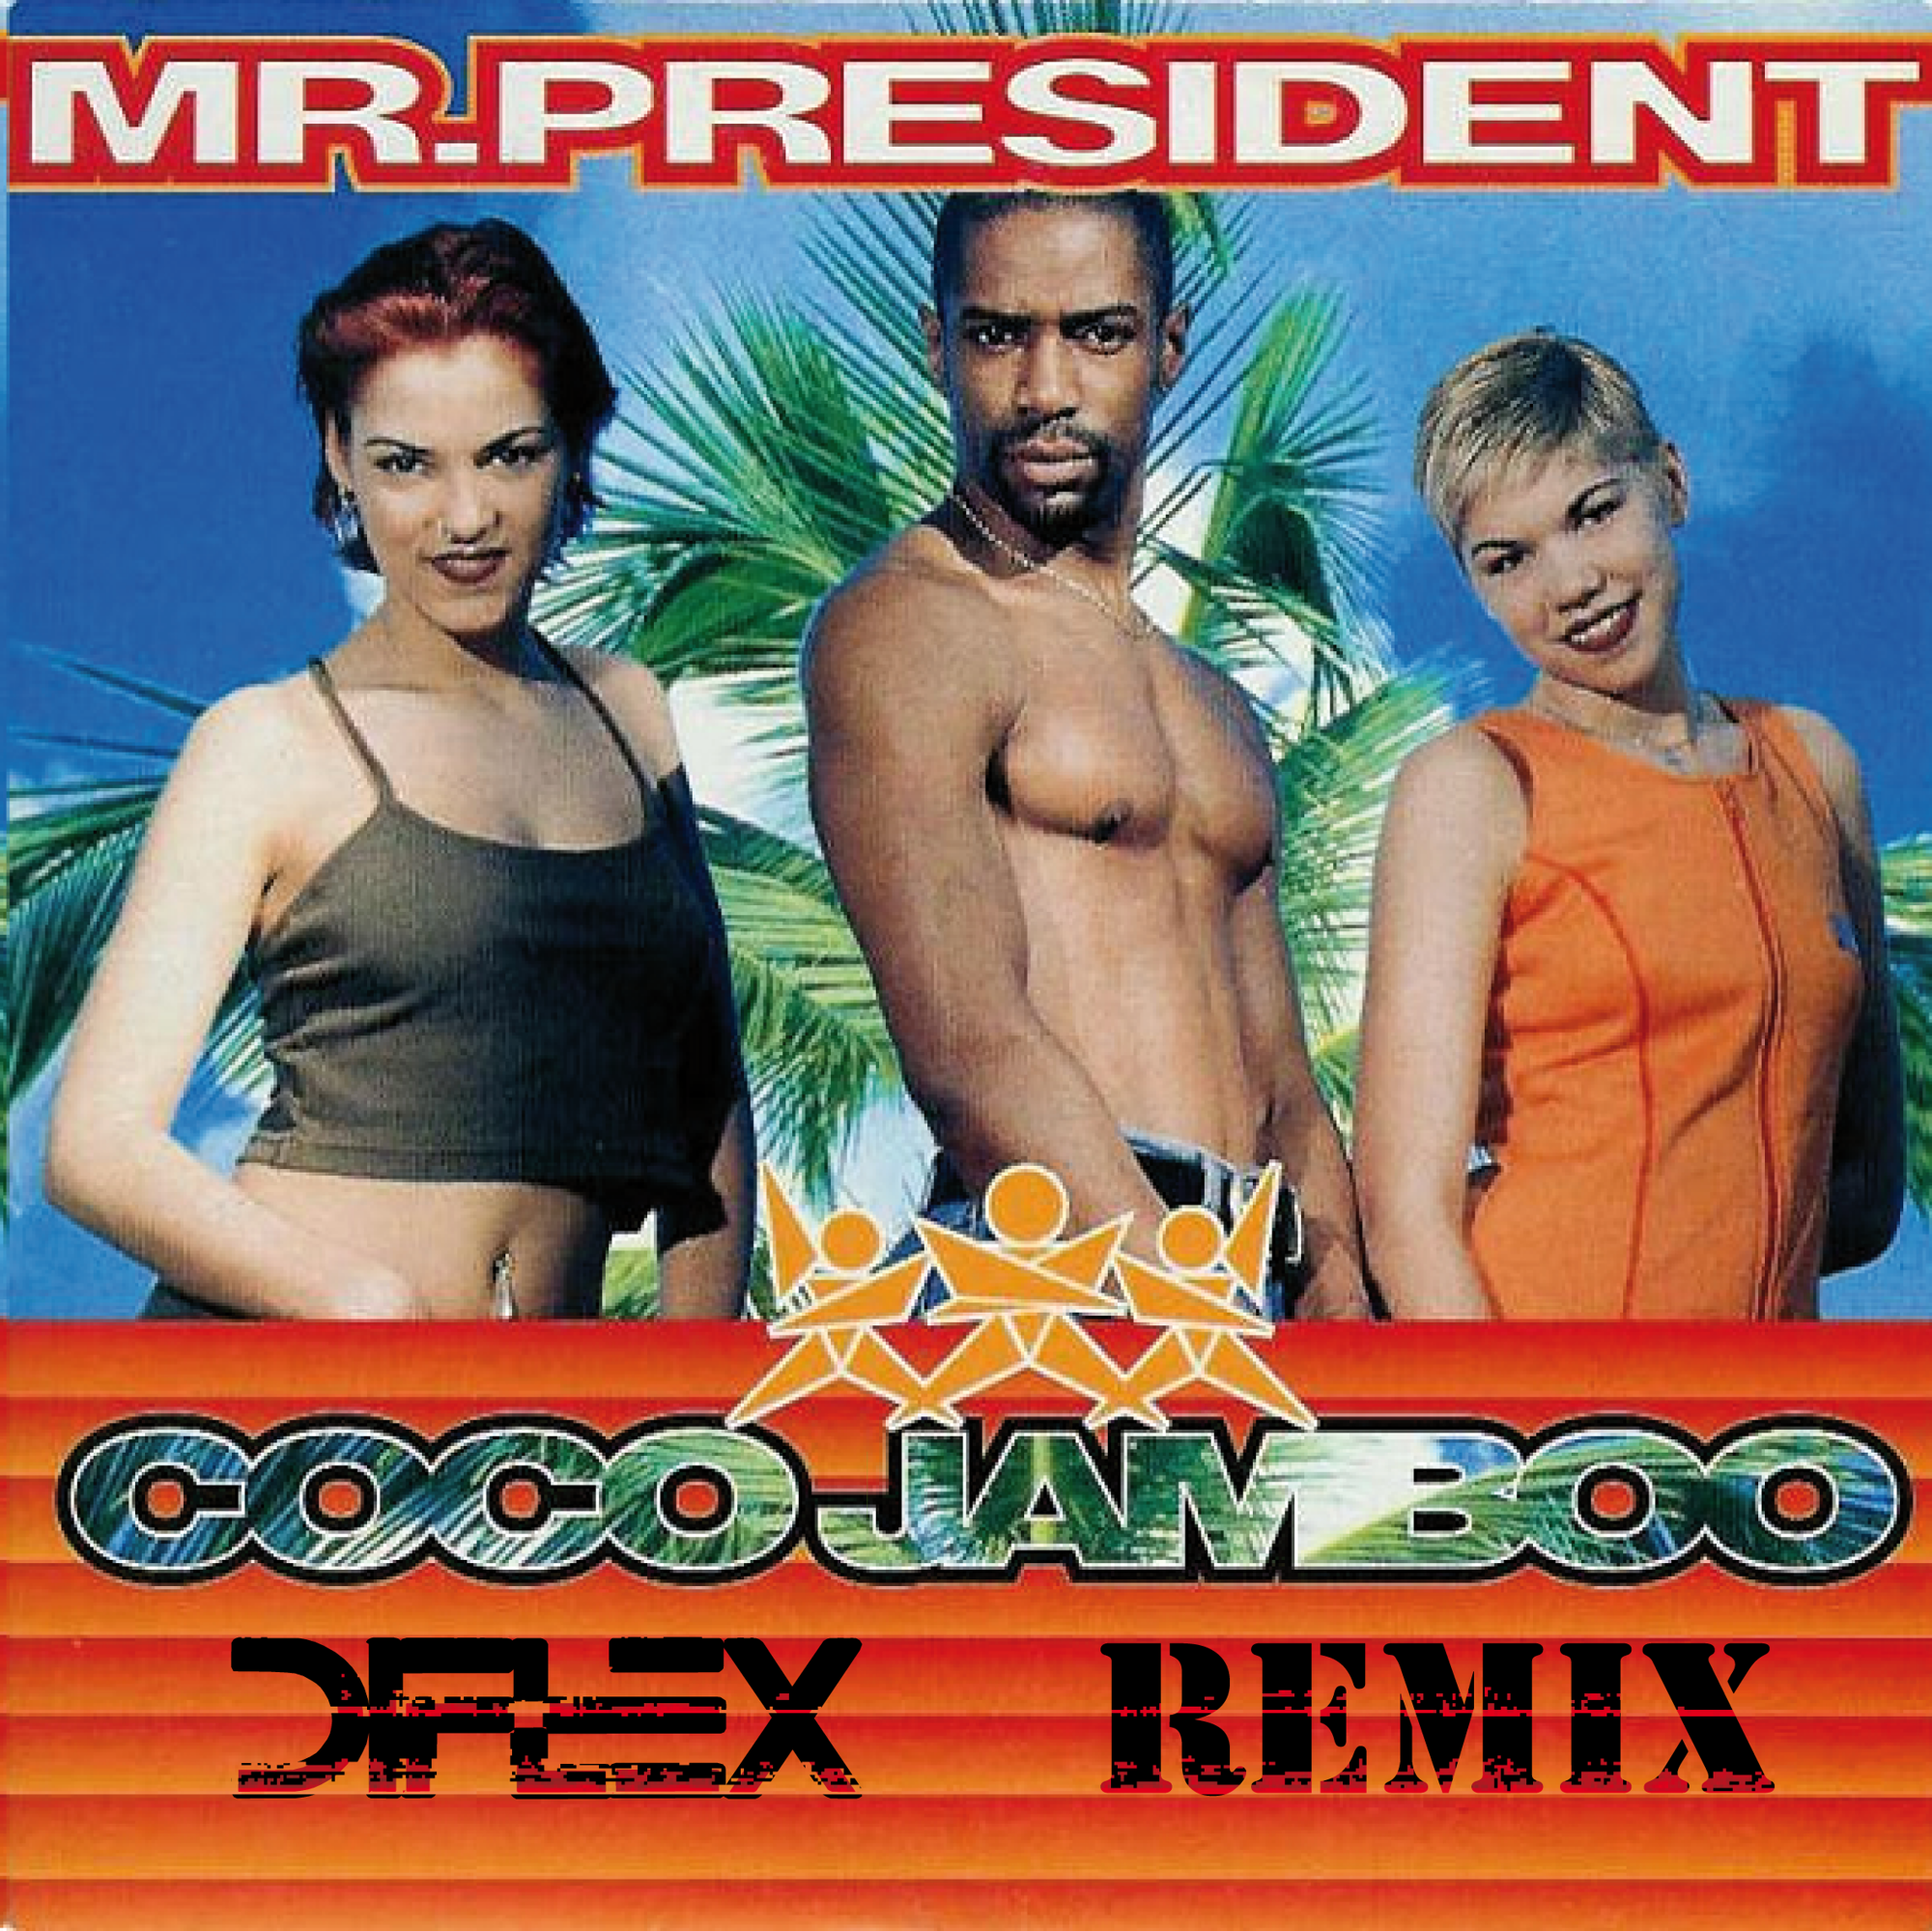 Coco jambo remix. Группа Mr. President. President - Coco Jamboo (1996). Mr. President обложка.